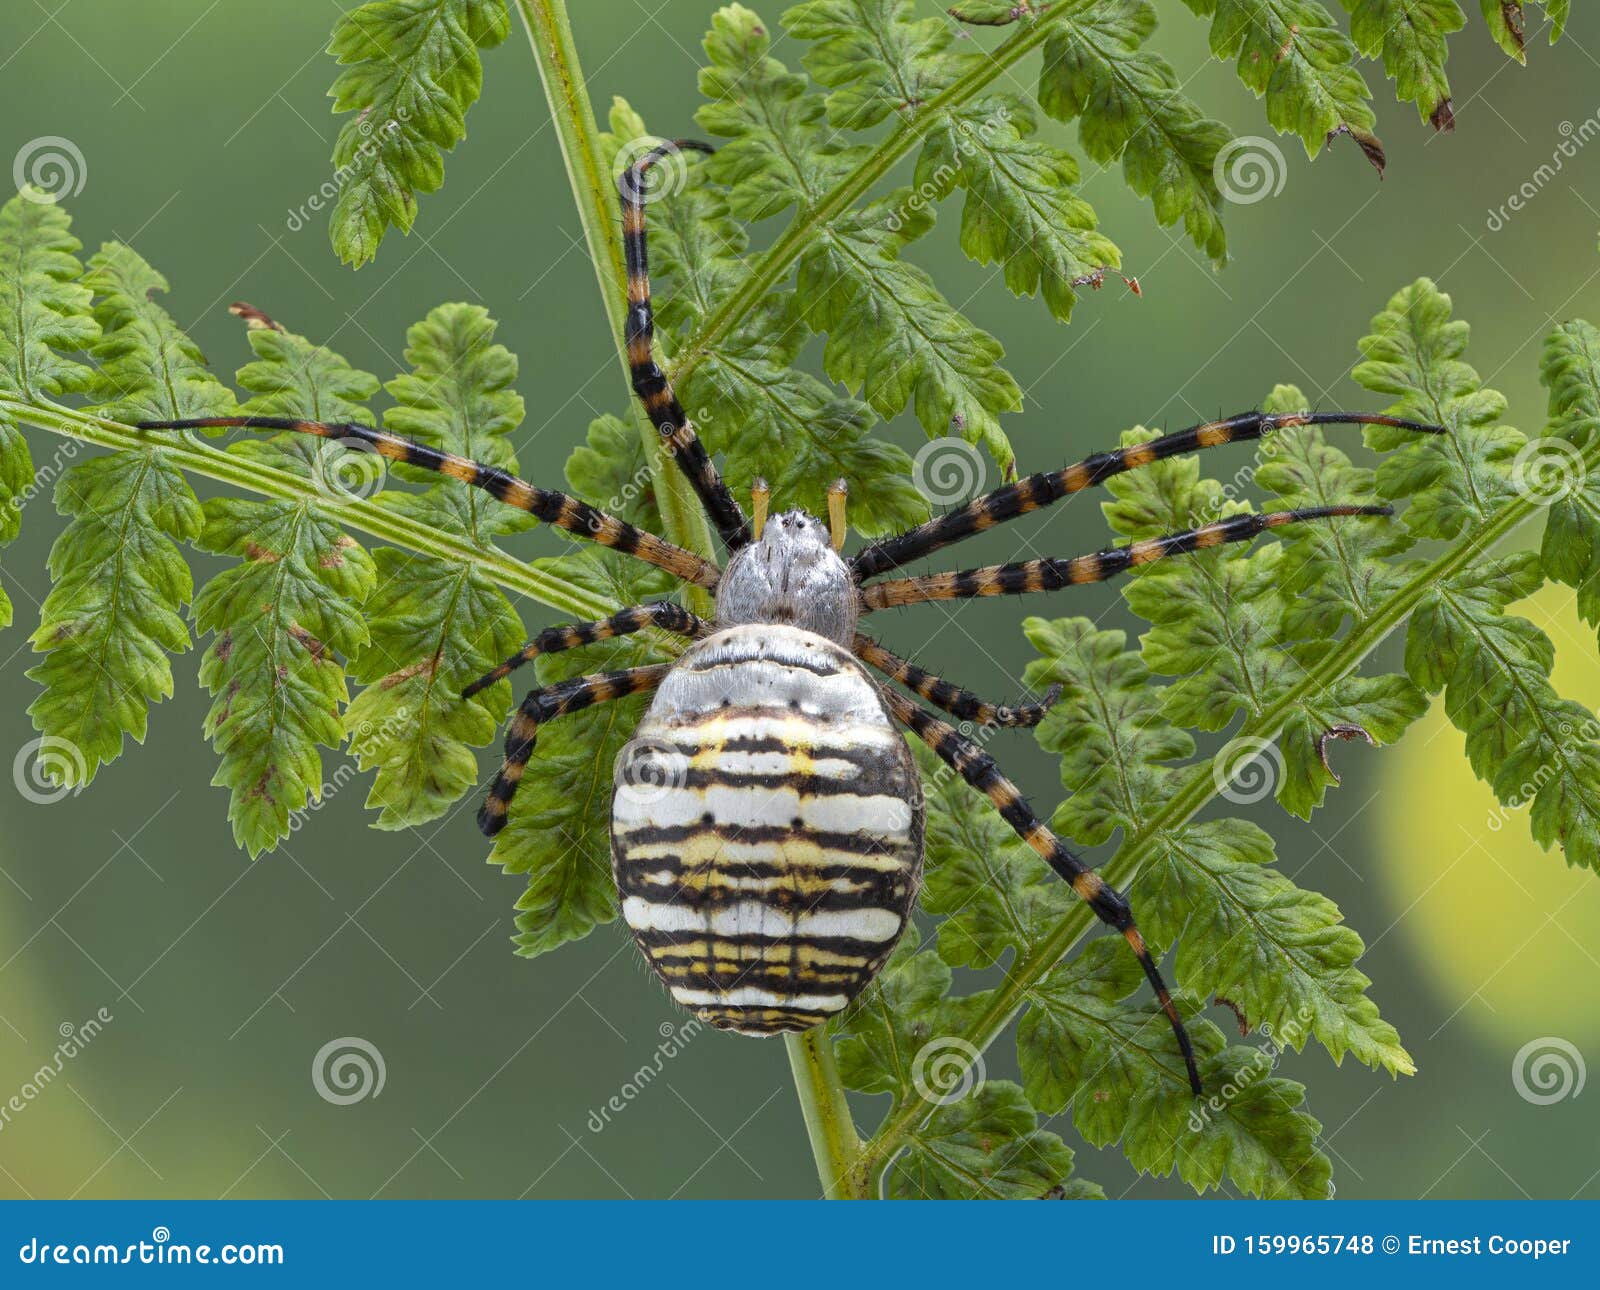 D102 P1010044 Banded Garden Spider Argiope Trifasciata Copyright